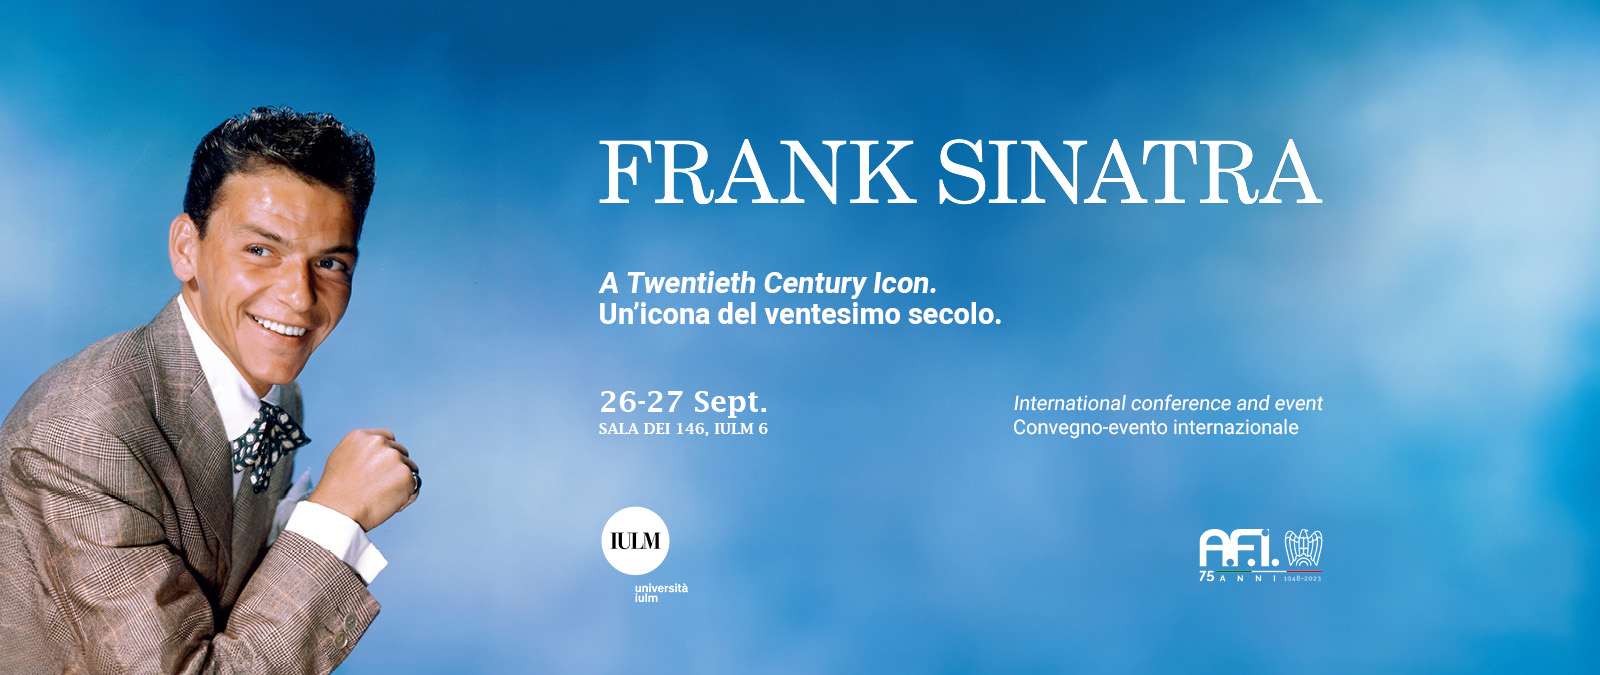 Frank Sinatra: un'icona del ventesimo secolo